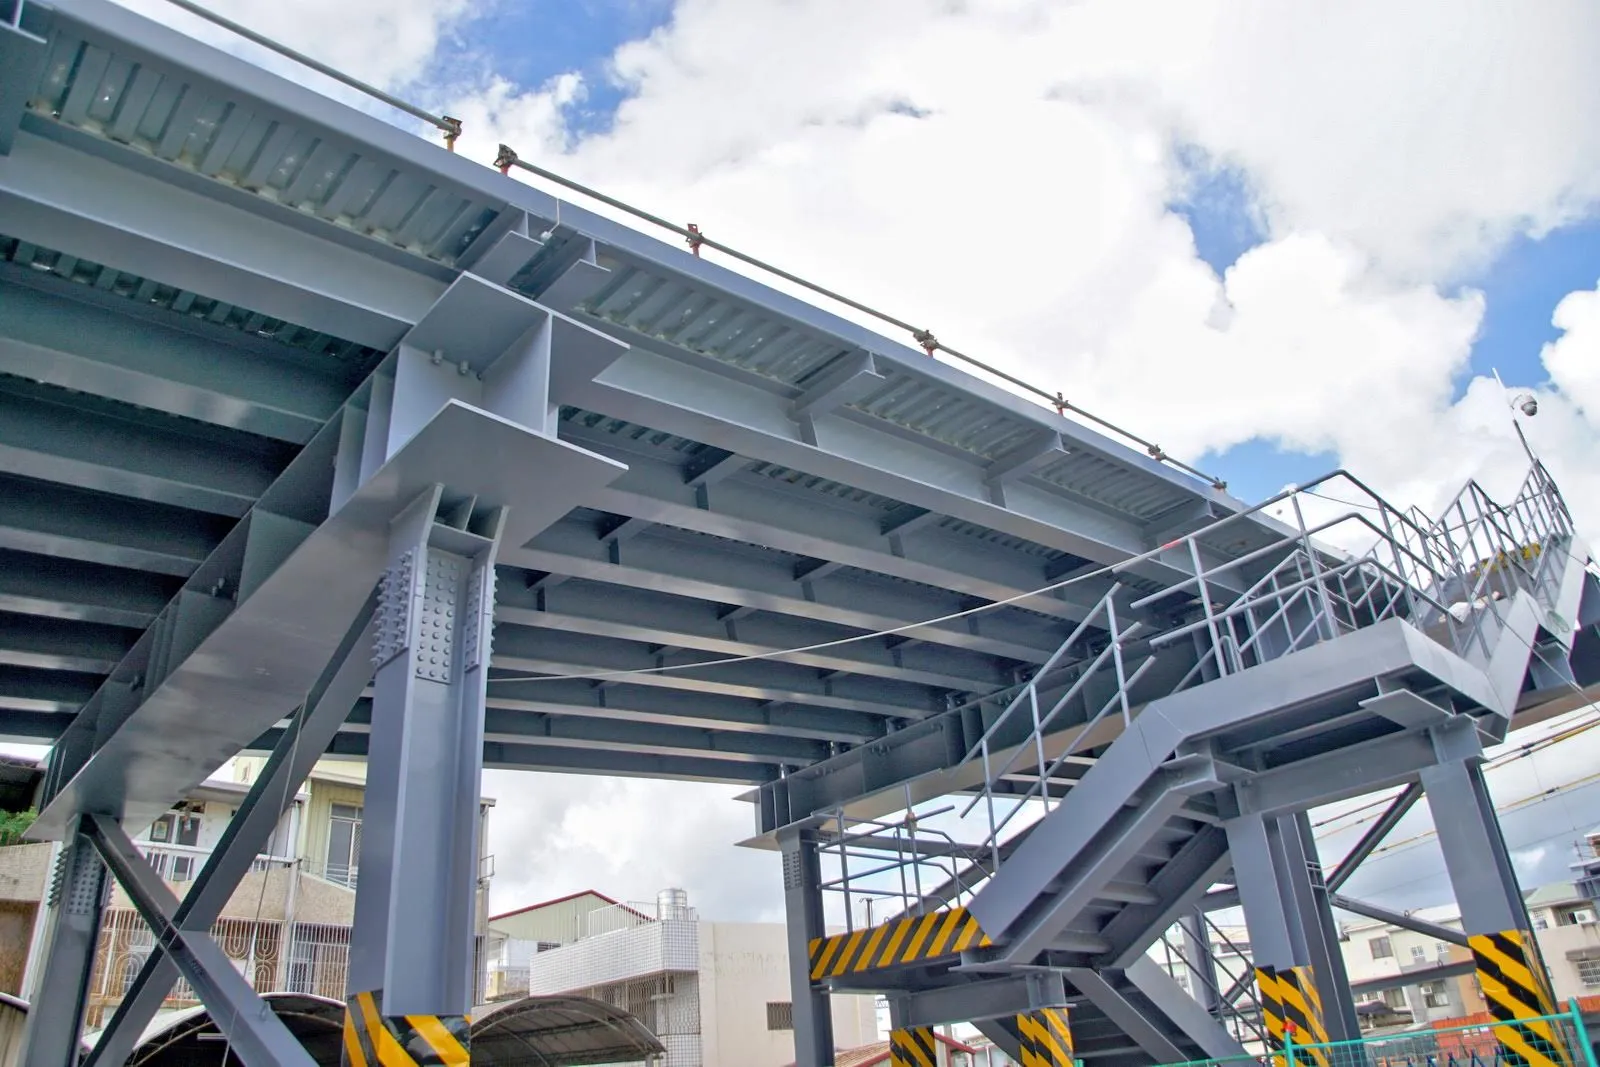 長榮地下道新建鋼便橋預估10月完工通車｜只開放8.5噸以下車輛與機慢車通行